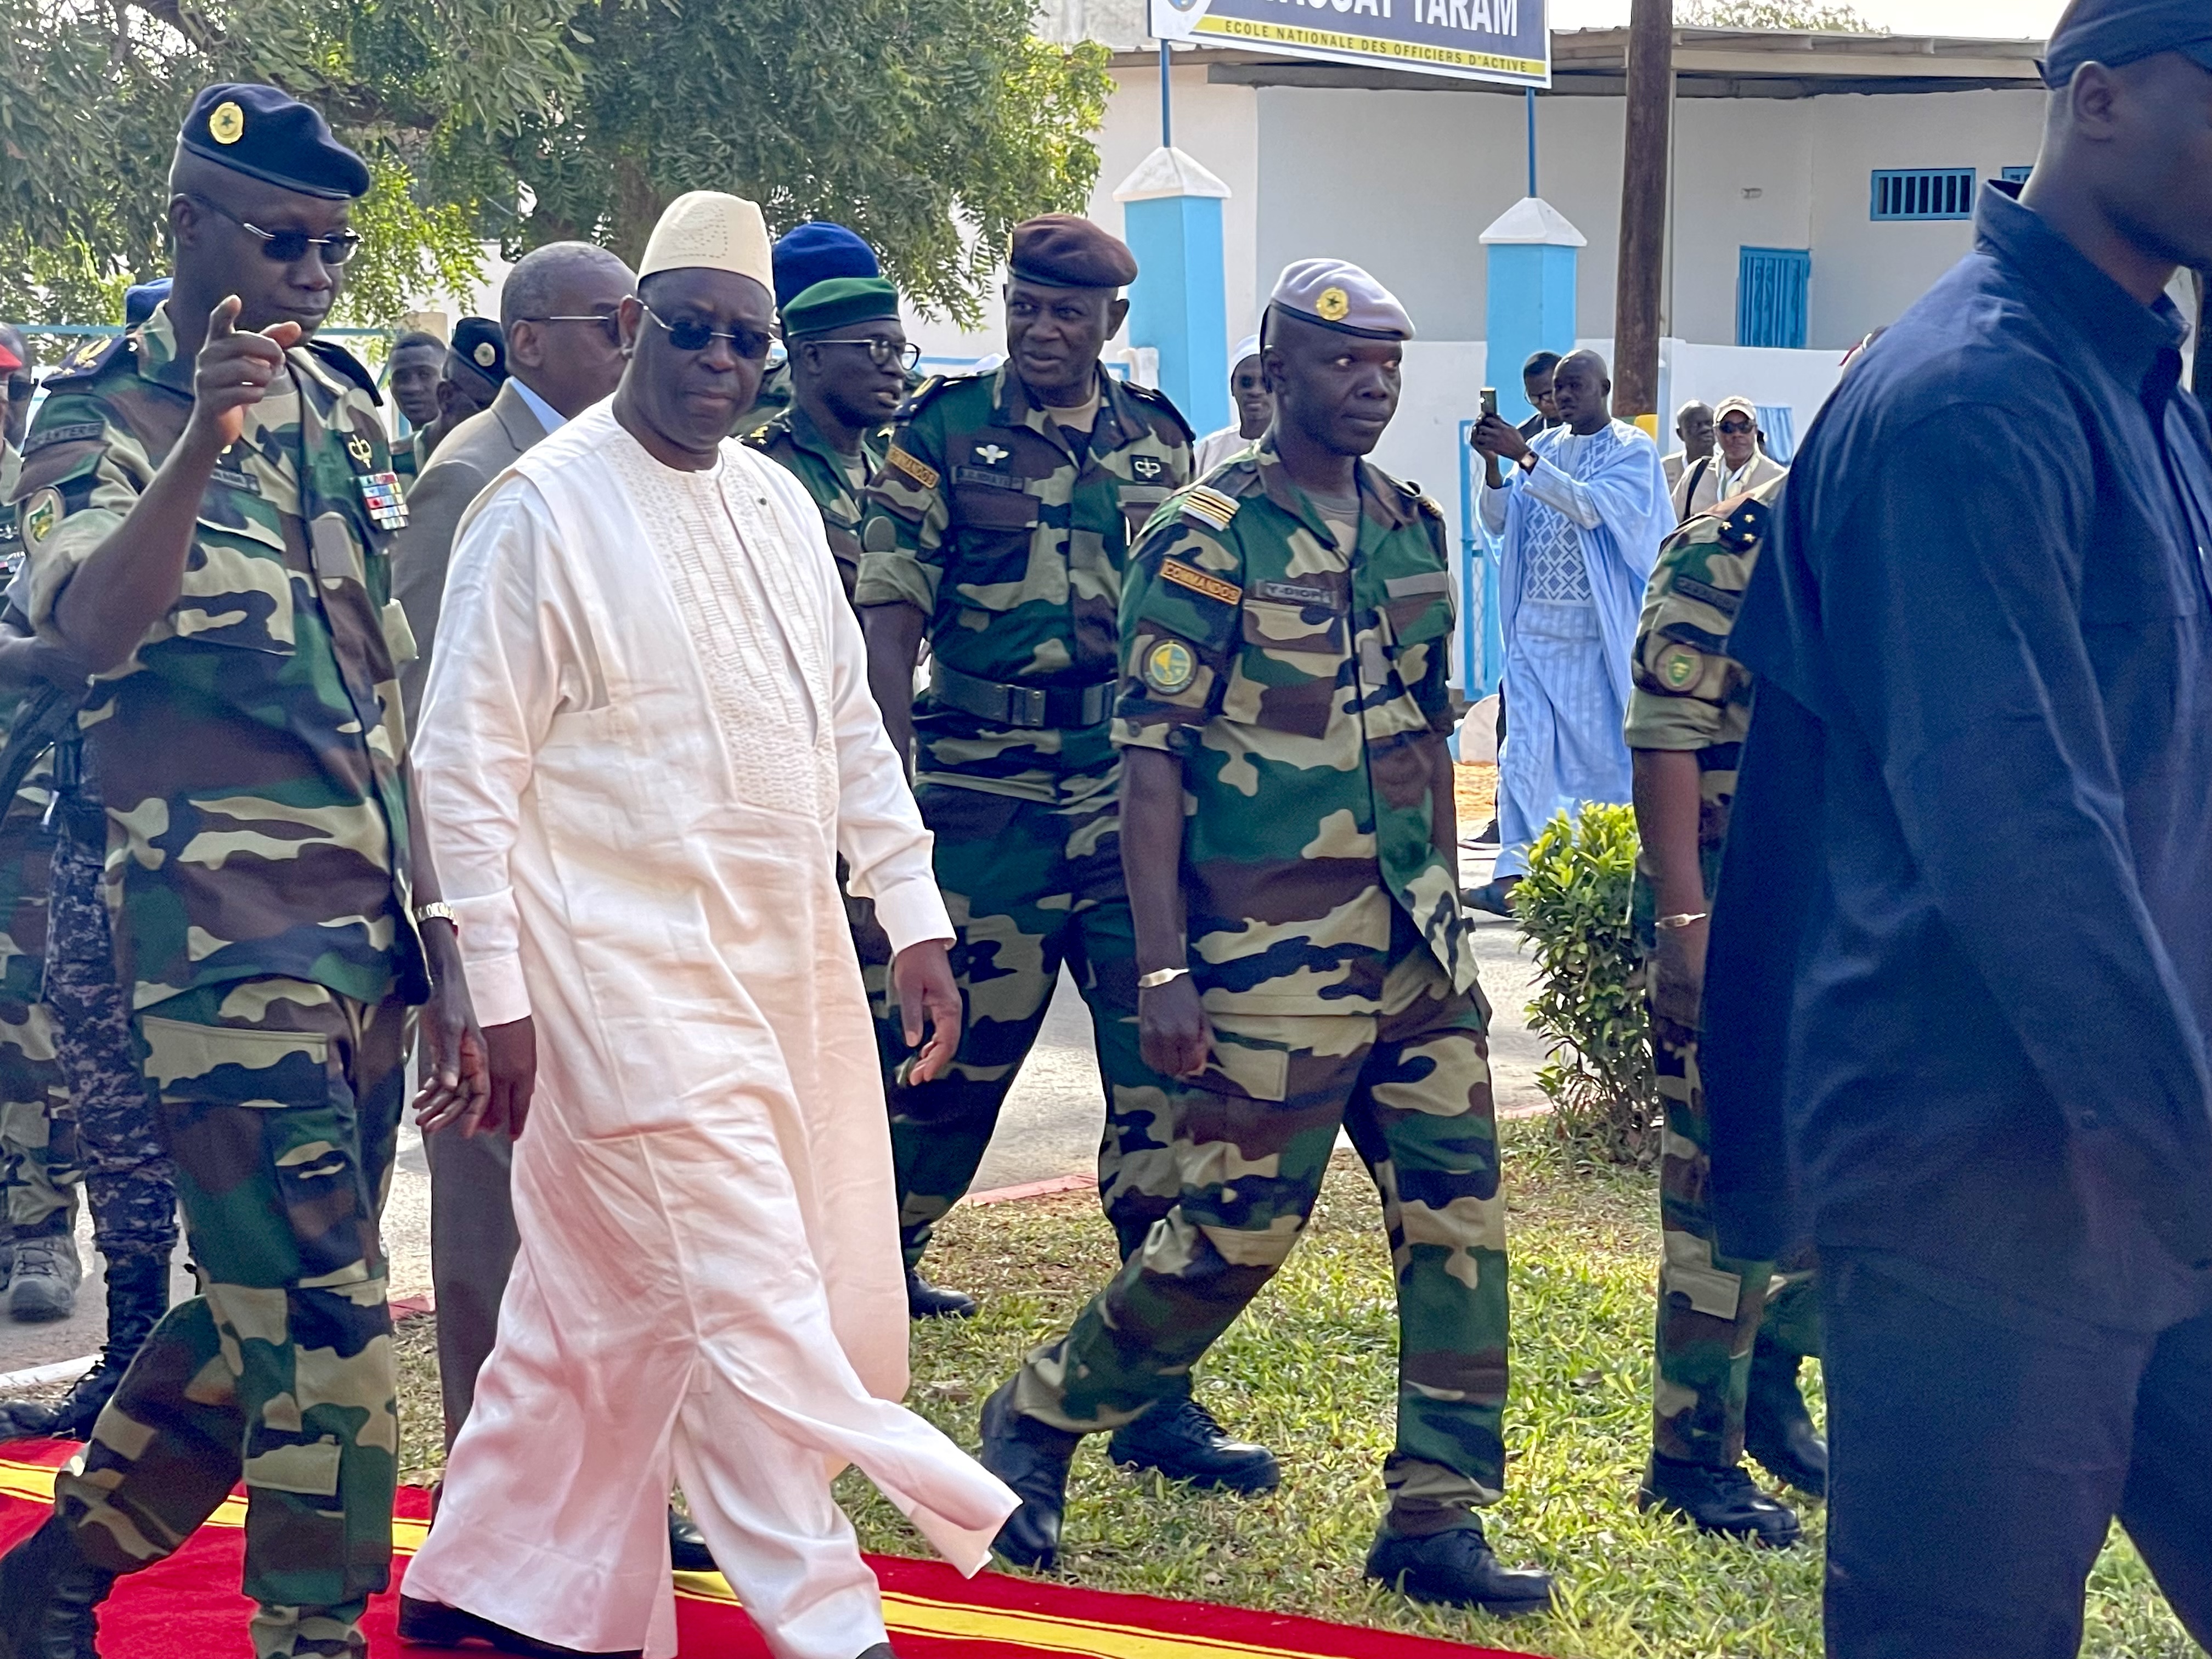 [ IMAGES ] Camp militaire de Thiès :  Visite du président Macky Sall de la base Général Louis Tavares Da Souza 